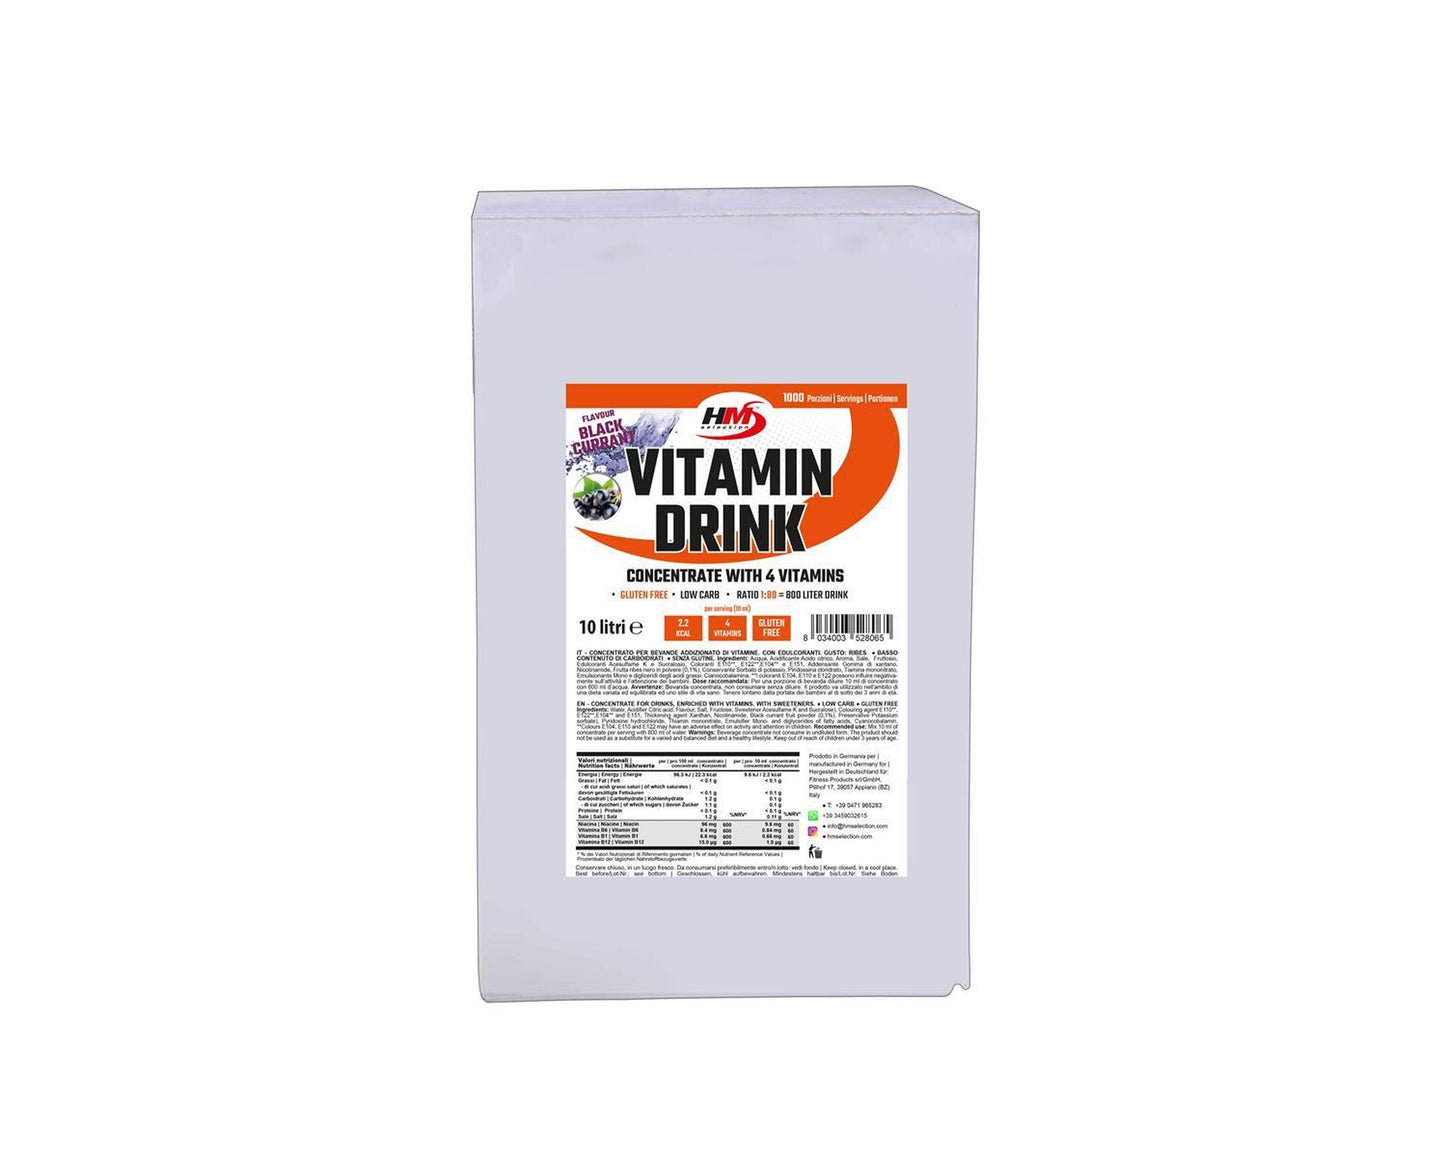 Vitamin Drink Bag in Box - Getränkekonzentrat mit Vitaminen